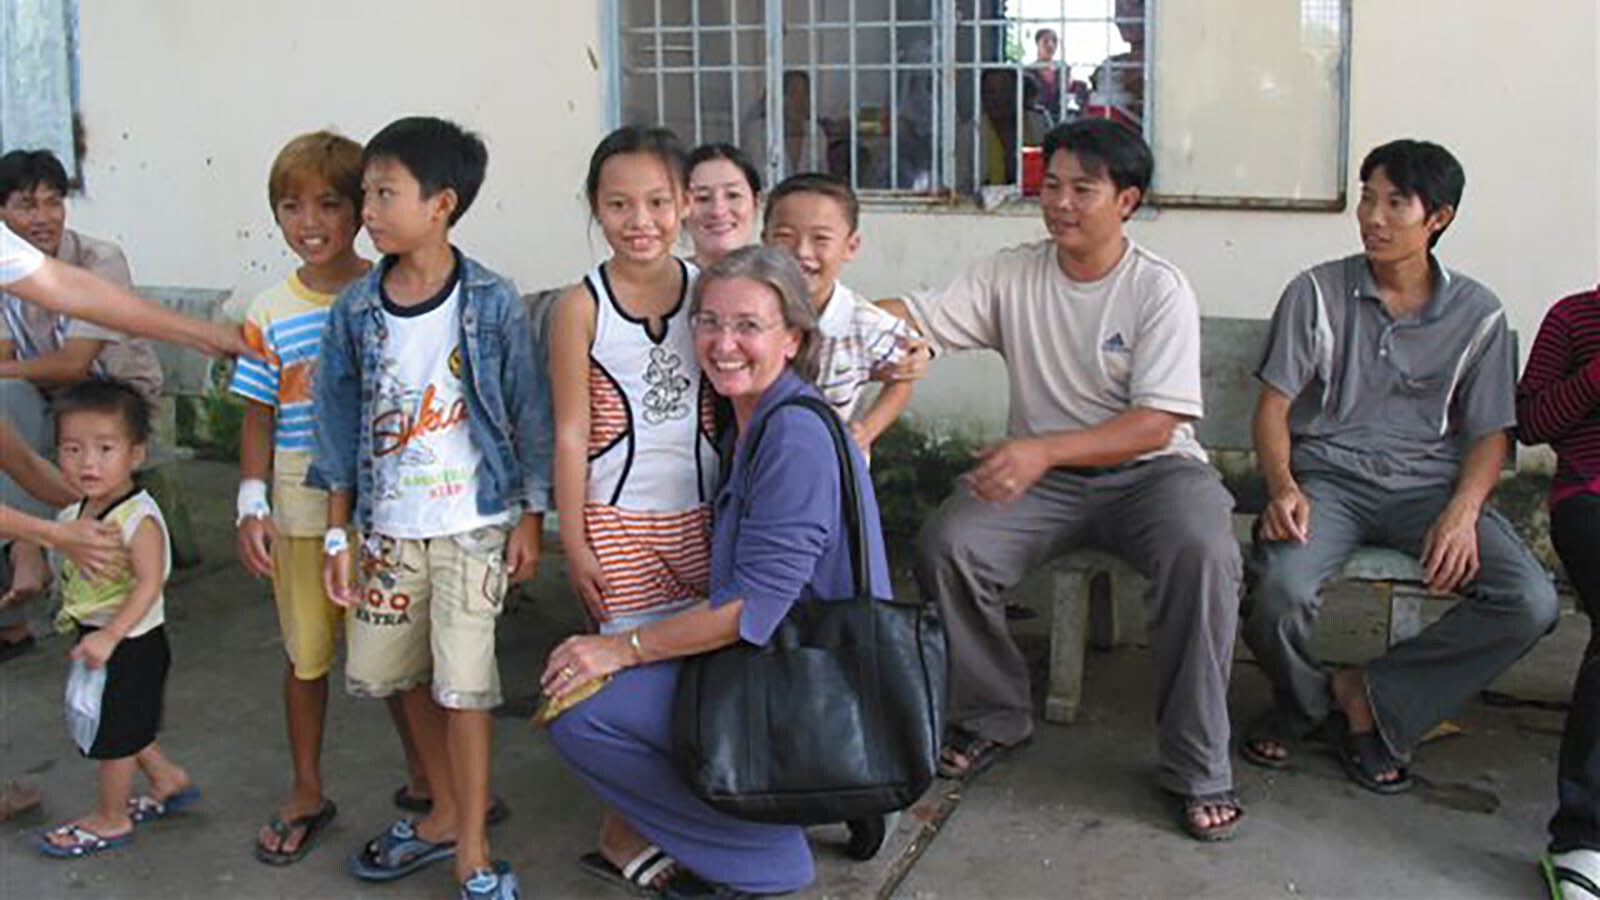 Leslie Hagenstein with some of her patients in Vietnam.